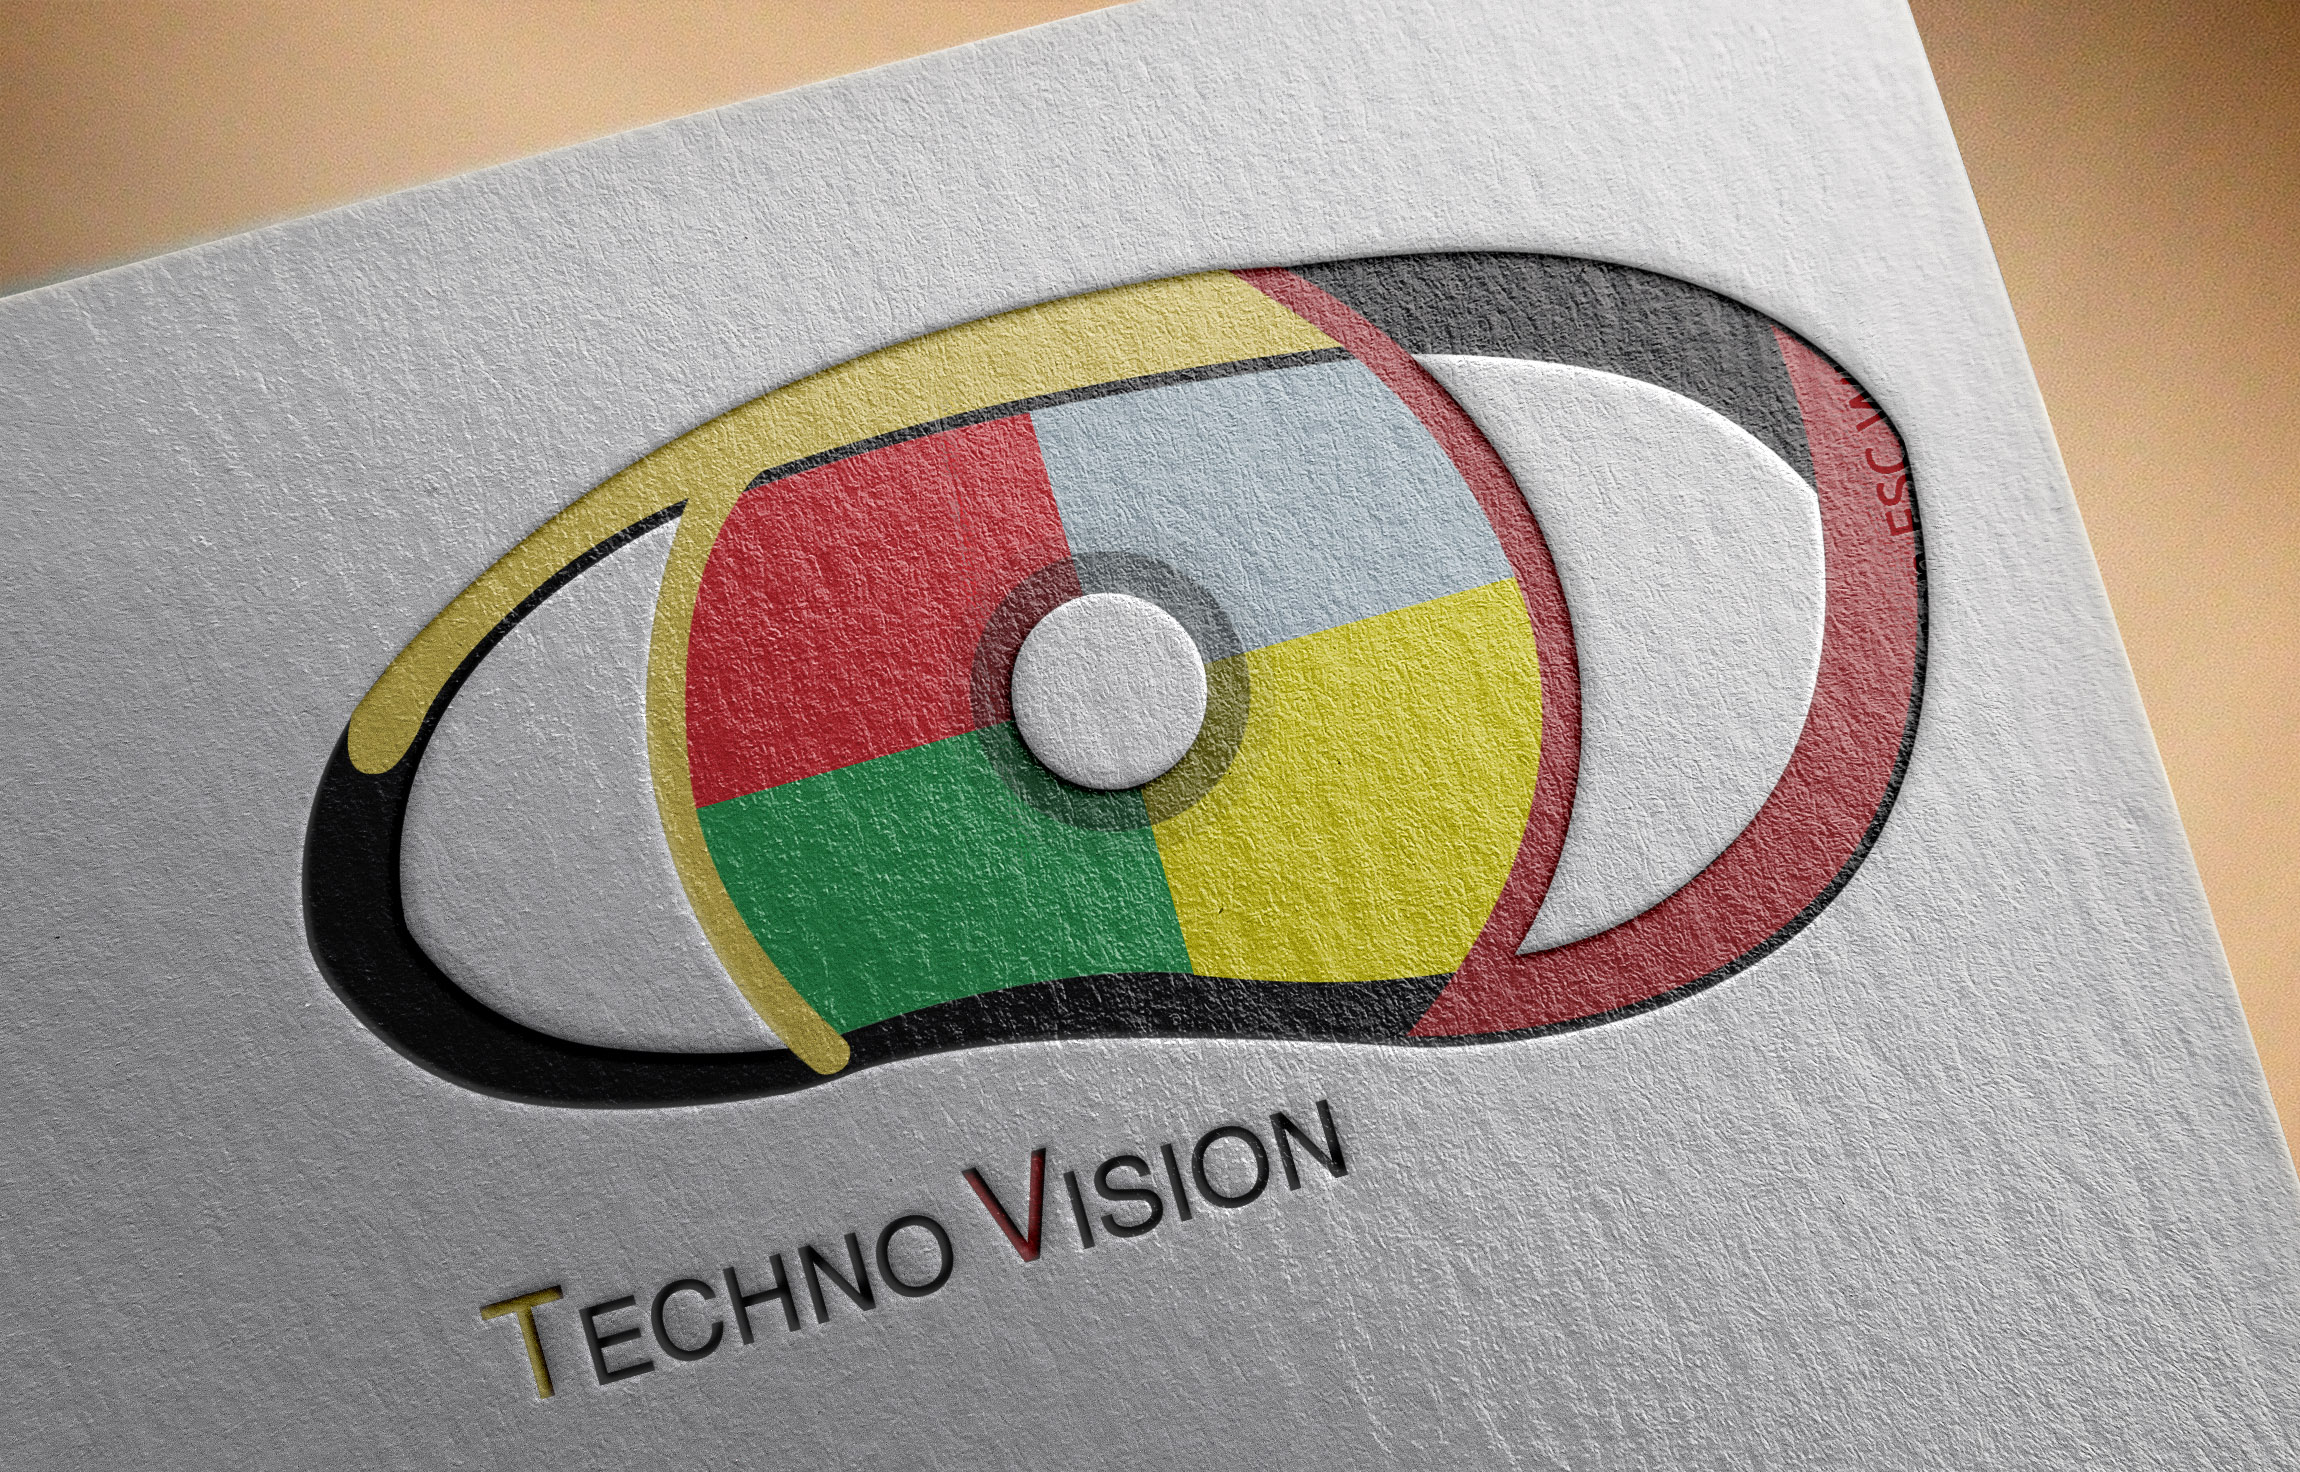 موك أب تصميم شعار لوجو شركة تكنو فيجن لتكنولوجيا المعلومات 2